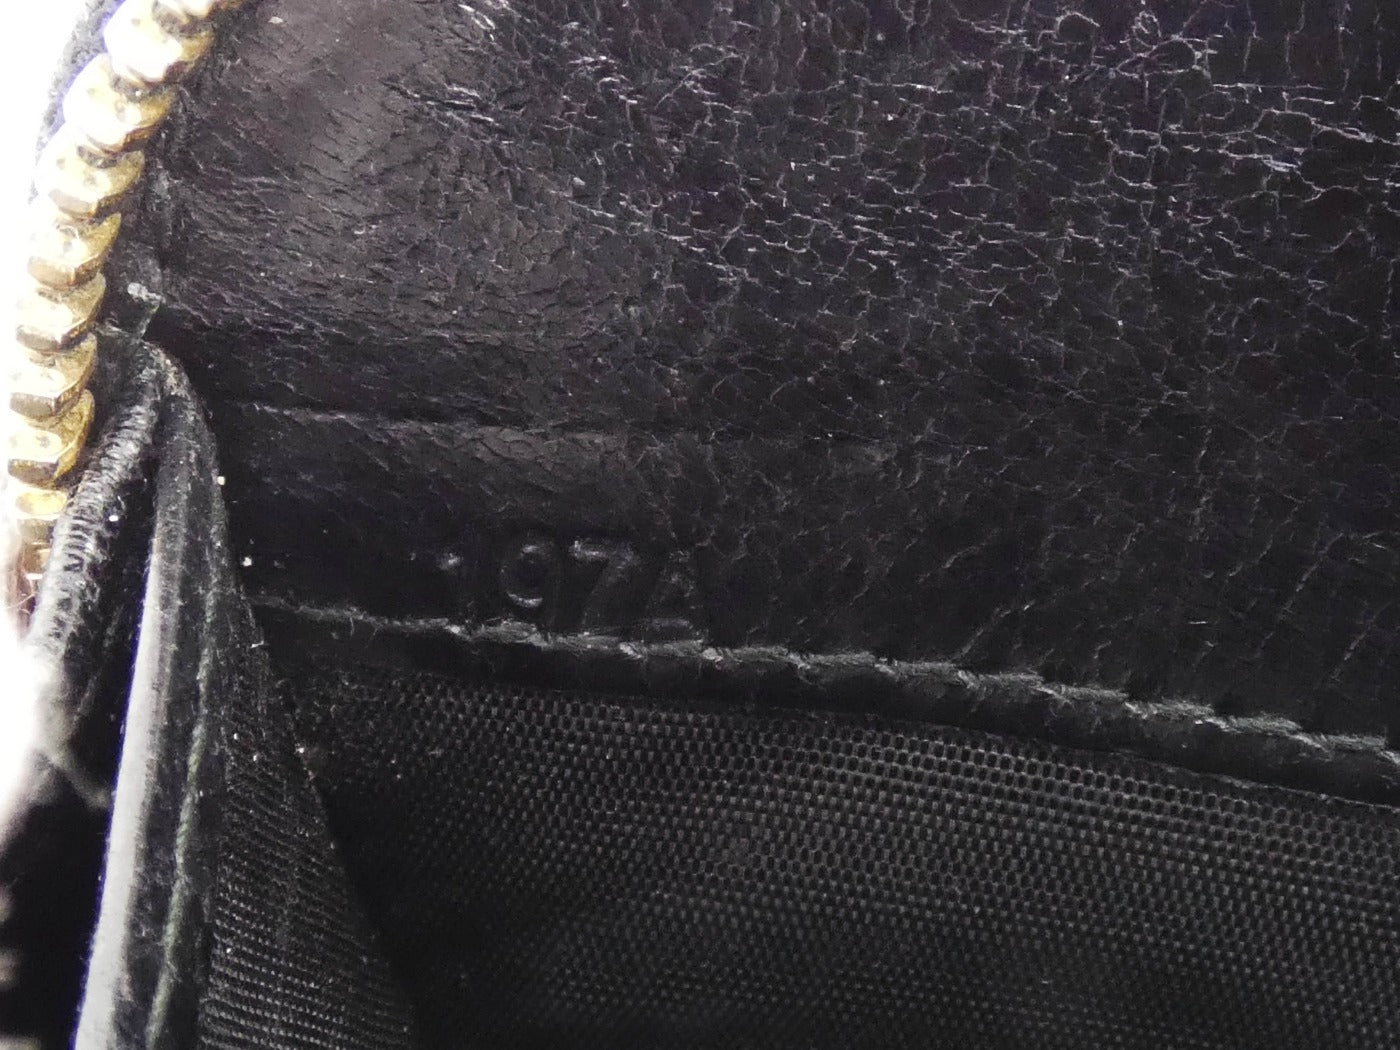 Miu Miu Black Leather Zip Continental Wallet Wallet Miu Miu